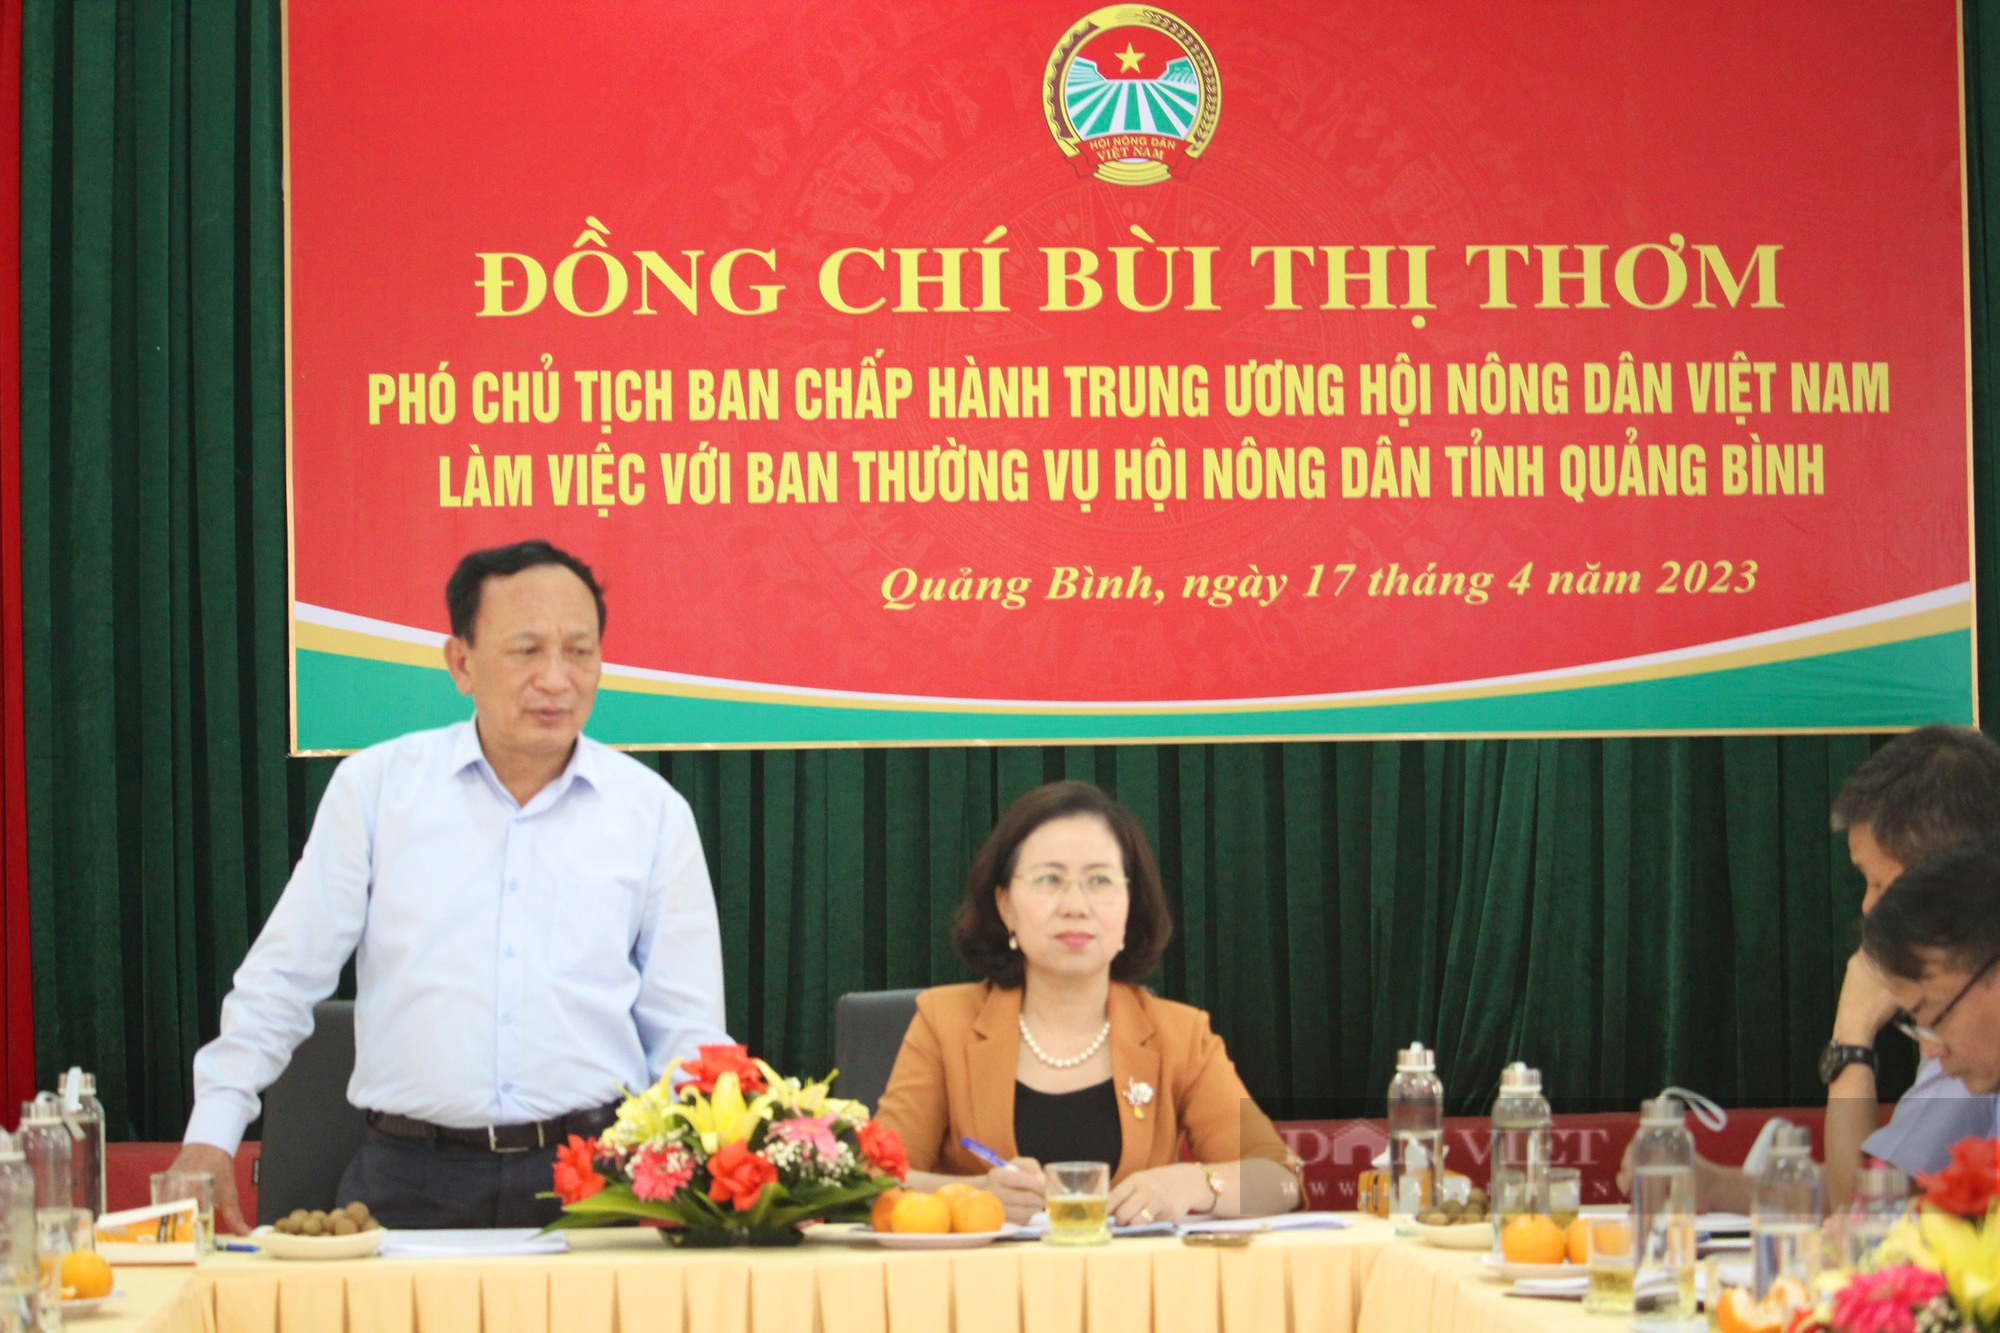 Phó Chủ tịch Trung ương Hội NDVN Bùi Thị Thơm: Cần có những đề án xây dựng các mô hình sản xuất dài hơi - Ảnh 4.